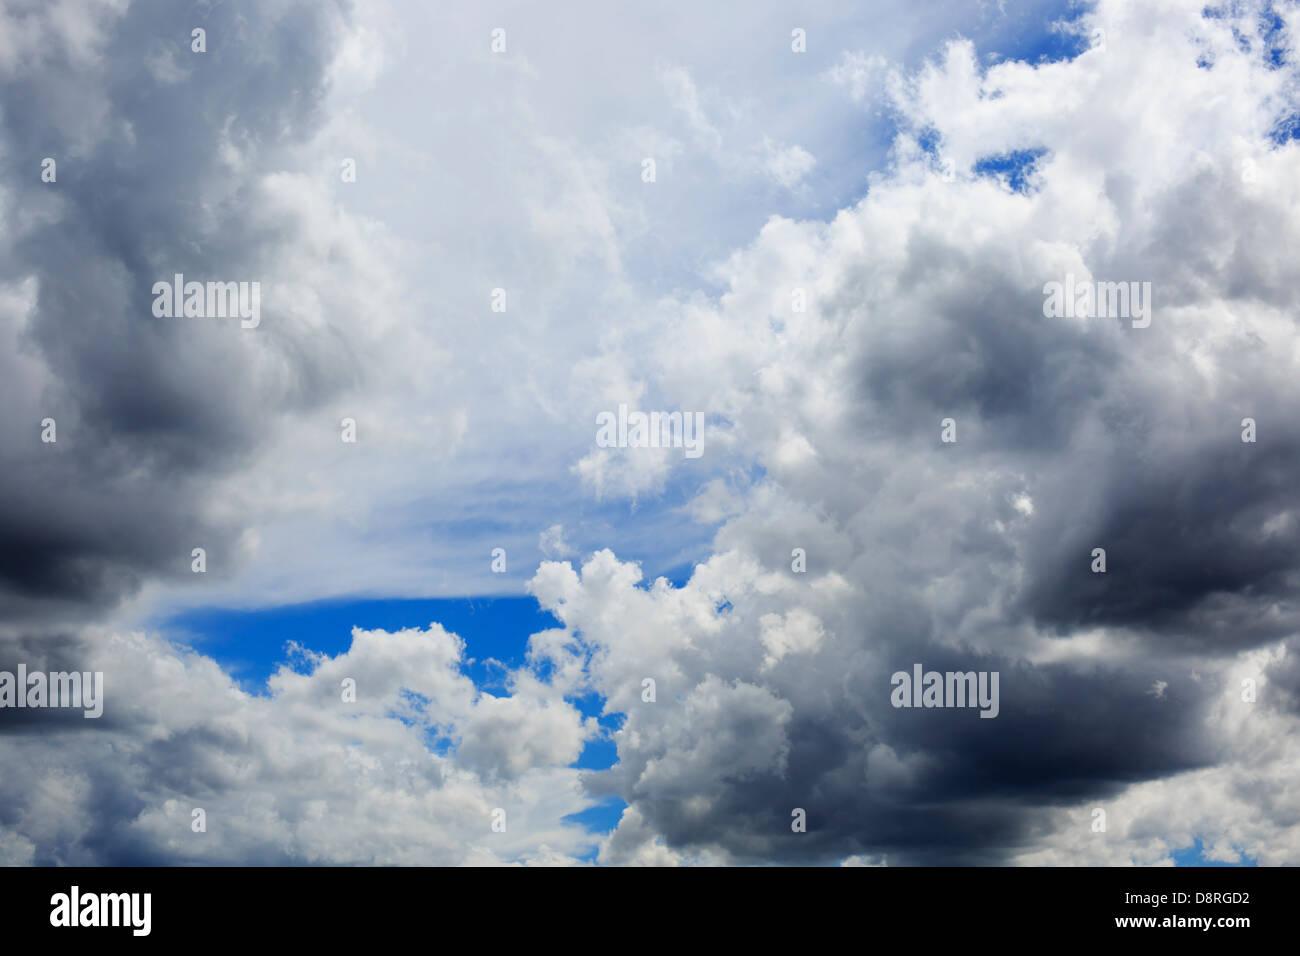 Estate nuvole temporalesche formando fino overhead - Midwest degli Stati Uniti. Foto Stock